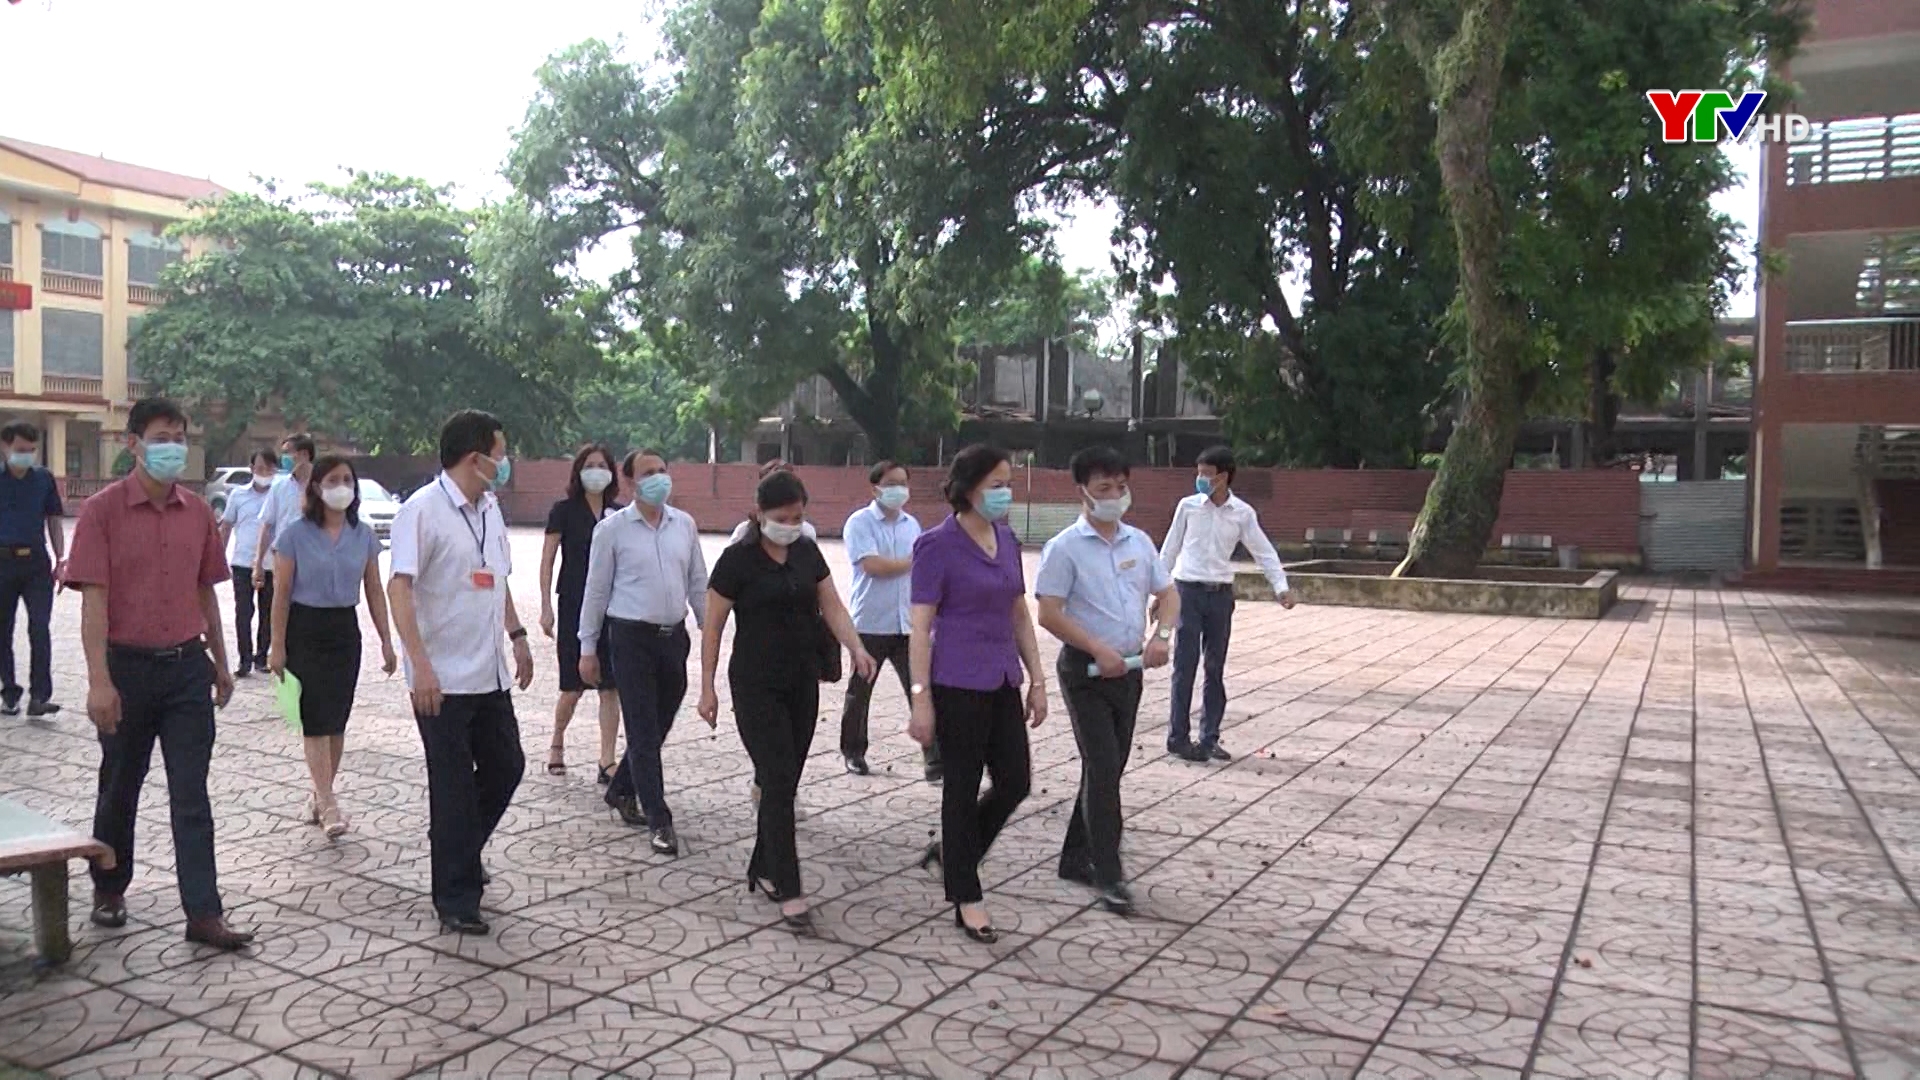 Đồng chí Bí thư Tỉnh ủy Phạm Thị Thanh Trà kiểm tra công tác chuẩn bị cho kỳ thi tốt nghiệp THPT năm 2020 tại thành phố Yên Bái